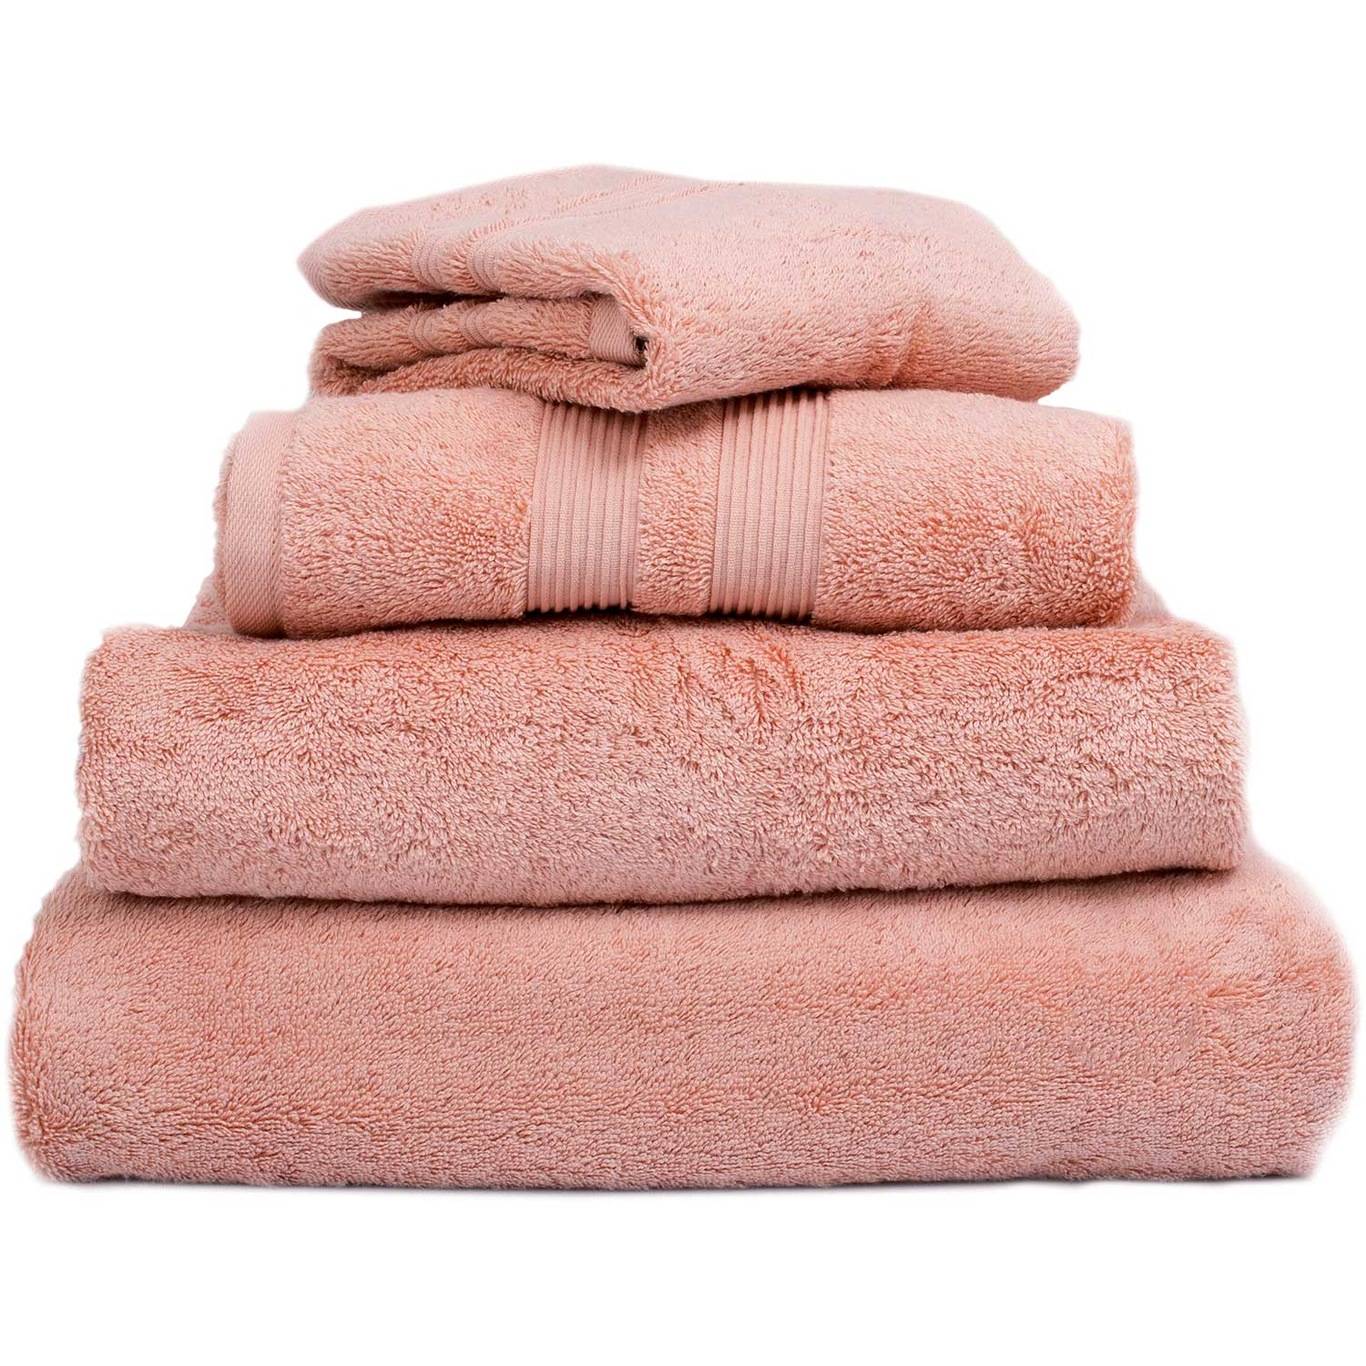 Fontana EKO Towel Pink, 50x70 cm